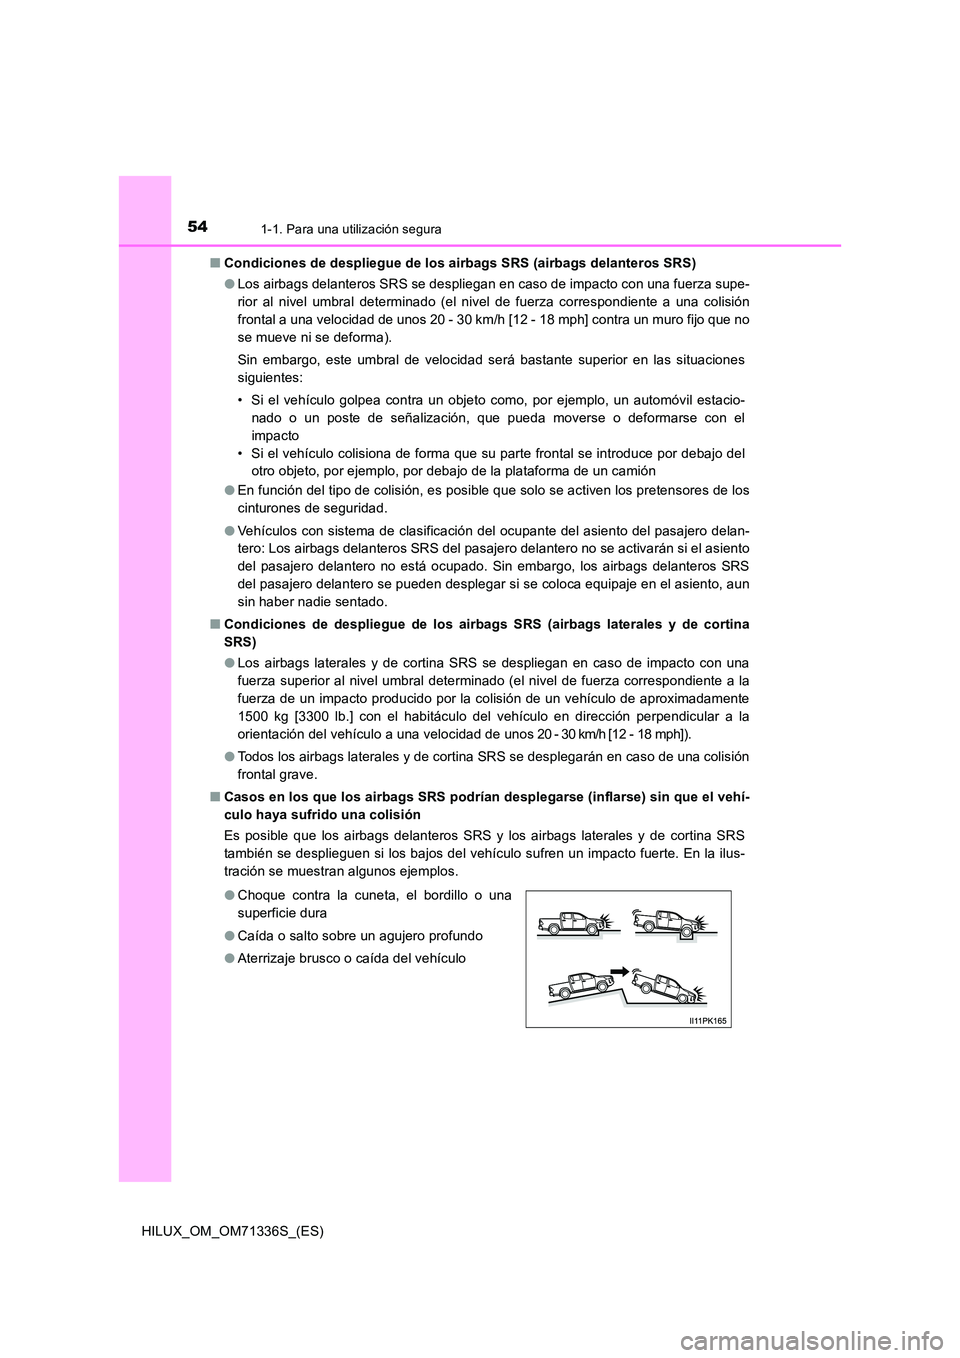 TOYOTA HILUX 2022  Manual del propietario (in Spanish) 541-1. Para una utilización segura
HILUX_OM_OM71336S_(ES) 
�Q Condiciones de despliegue de los airbags SRS (airbags delanteros SRS) 
�O Los airbags delanteros SRS se despliegan en caso de impacto con